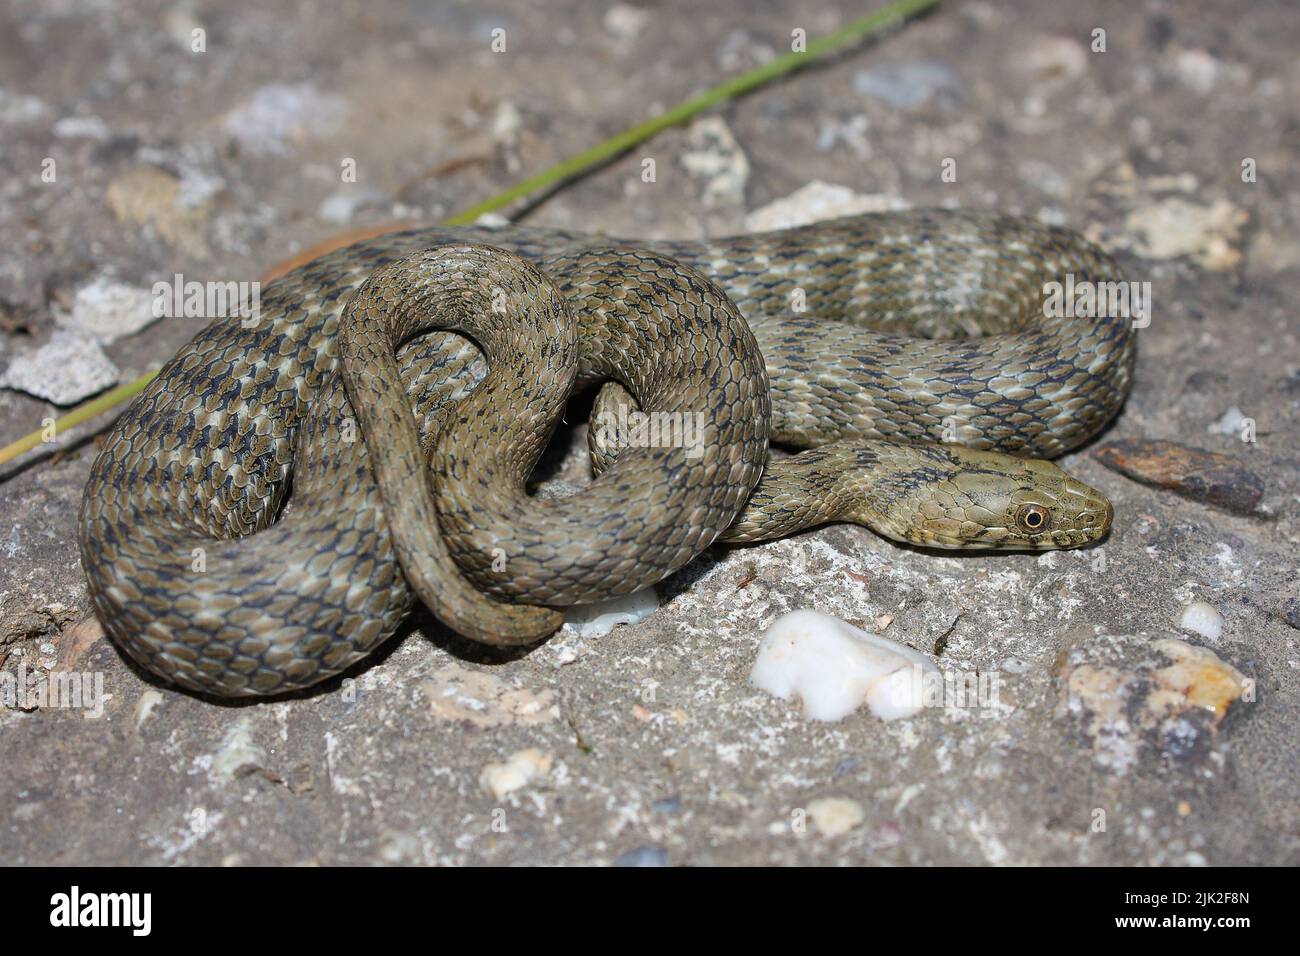 Serpent à dés (Natrix tessellata) dans un habitat naturel Banque D'Images